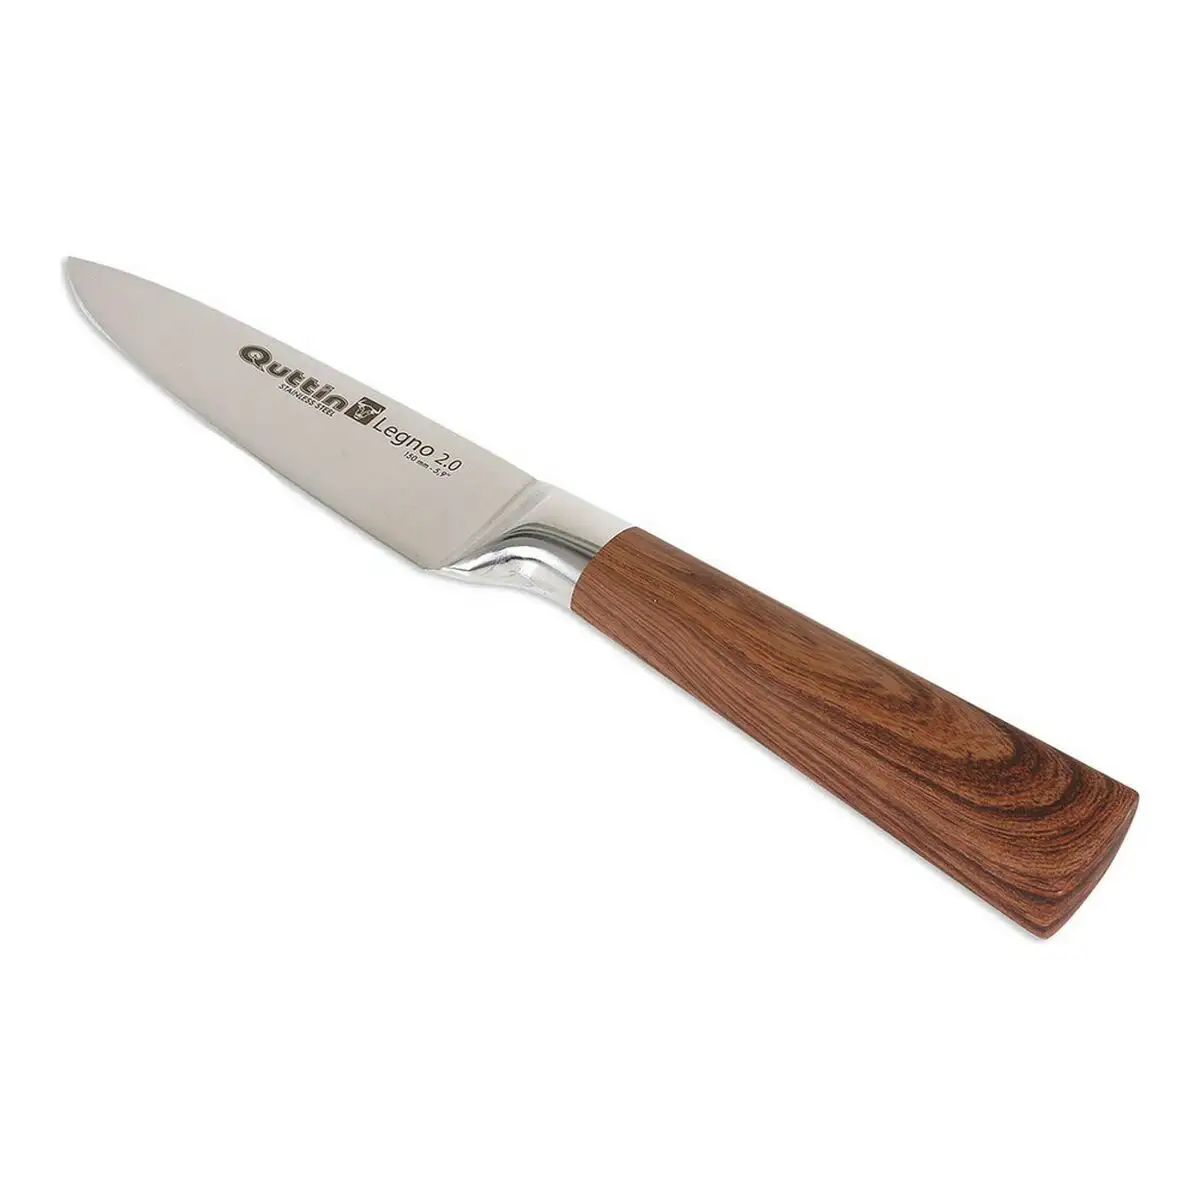 Couteau de cuisine quttin legno 2 0 acier inoxydable 15 cm _7993. DIAYTAR SENEGAL - Où la Mode et le Confort se Rencontrent. Plongez dans notre univers de produits et trouvez des articles qui vous habillent avec style et aisance.